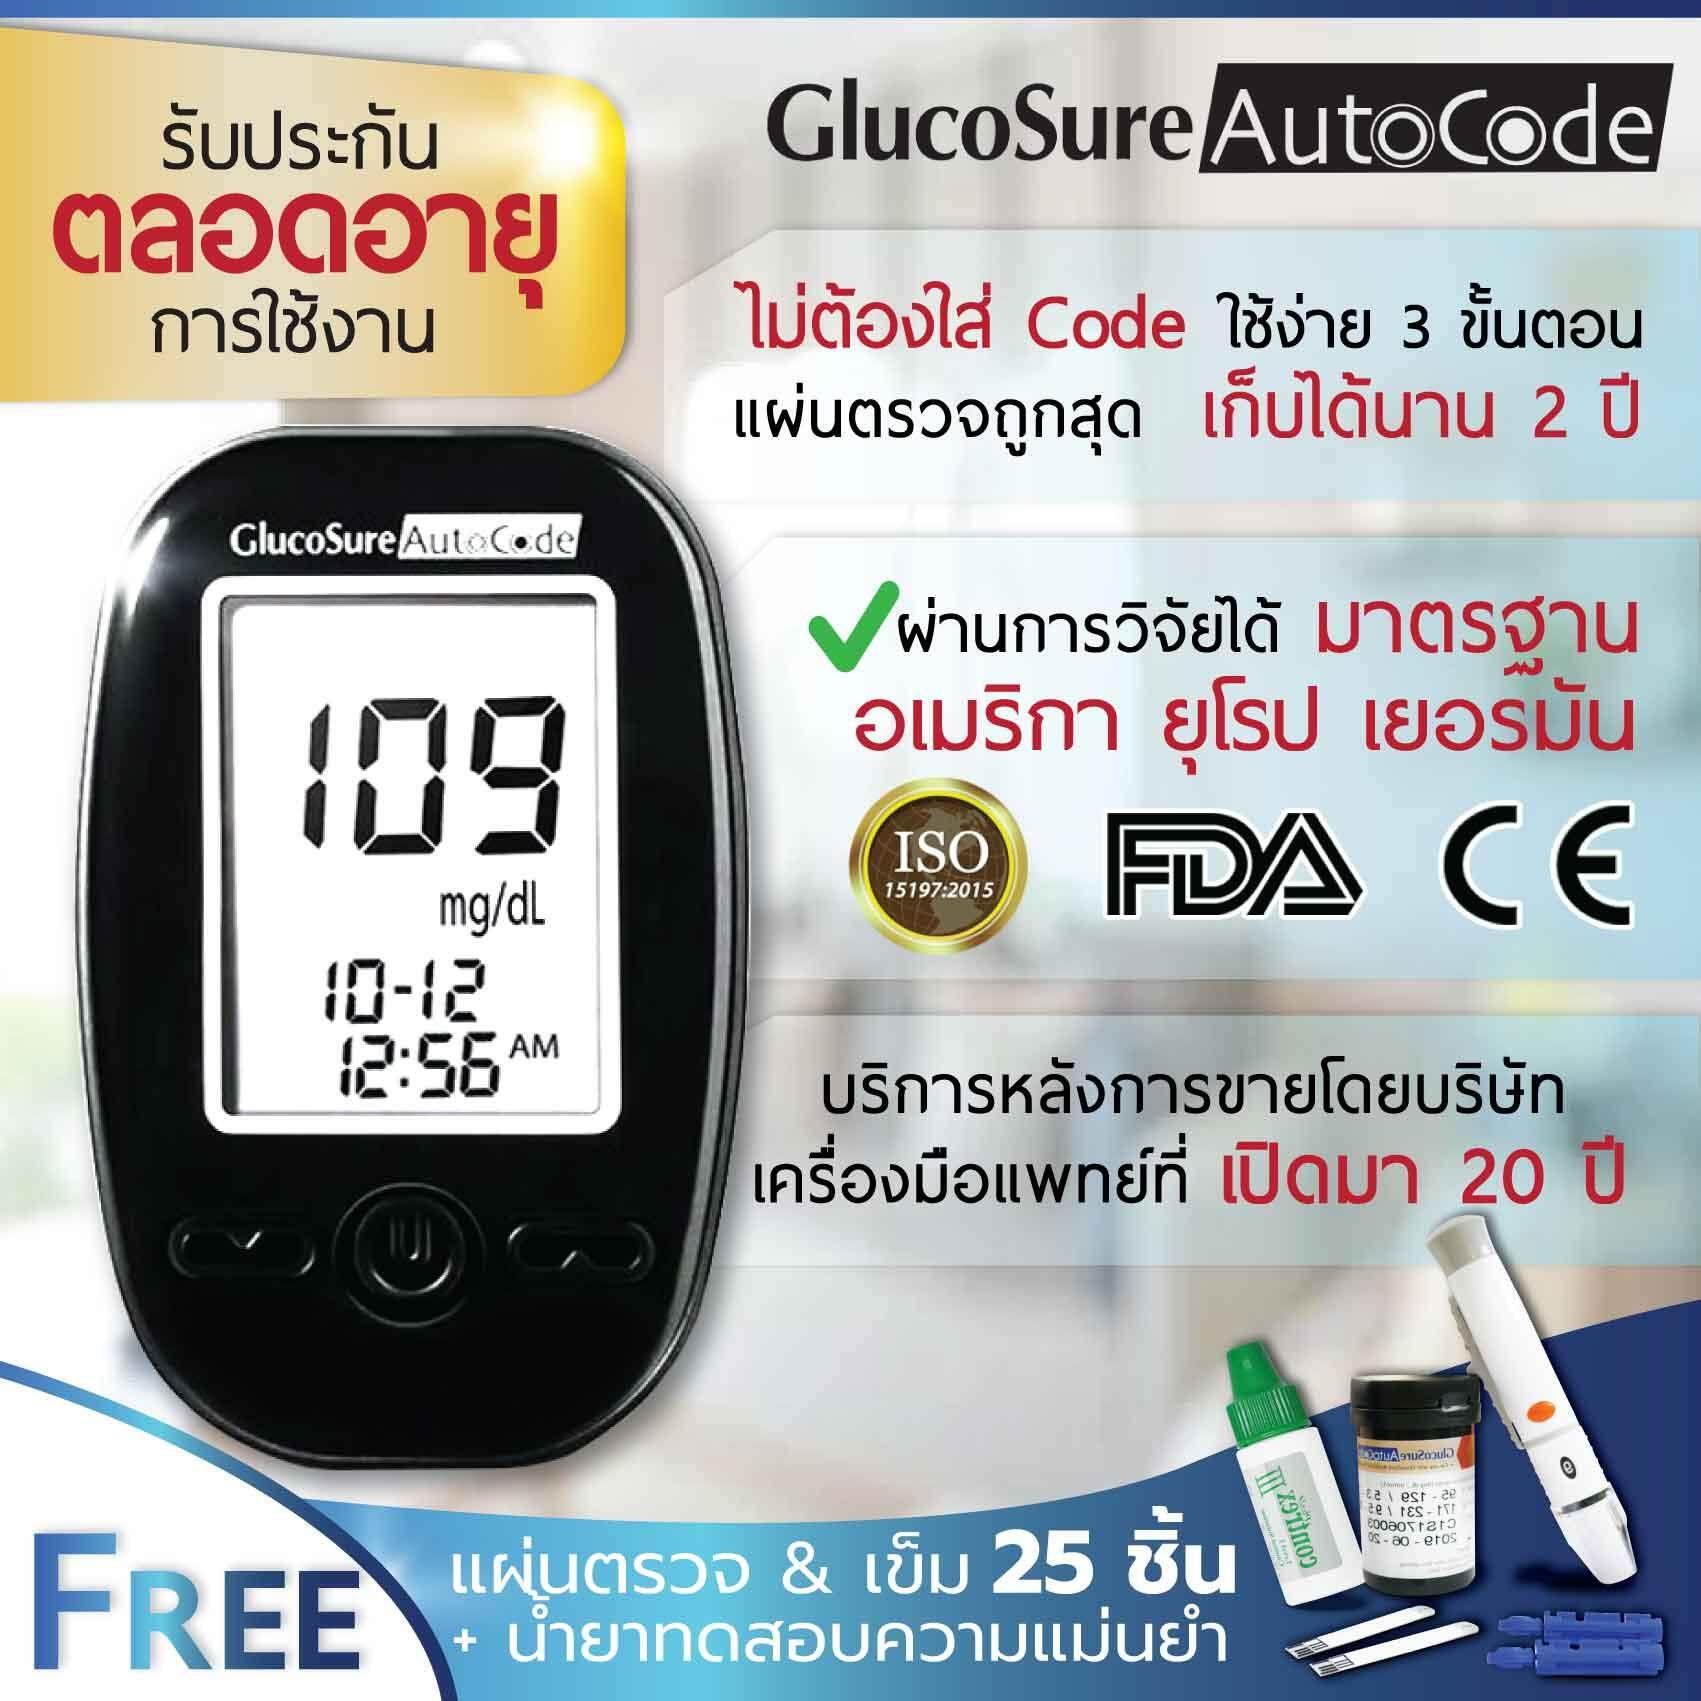 เครื่องตรวจเบาหวาน มีรับประกัน Glucosure Autocode เครื่องตรวจเบาหวาน เครื่องตรวจน้ำตาล มีรับประกันตลอดอายุการใช้งาน